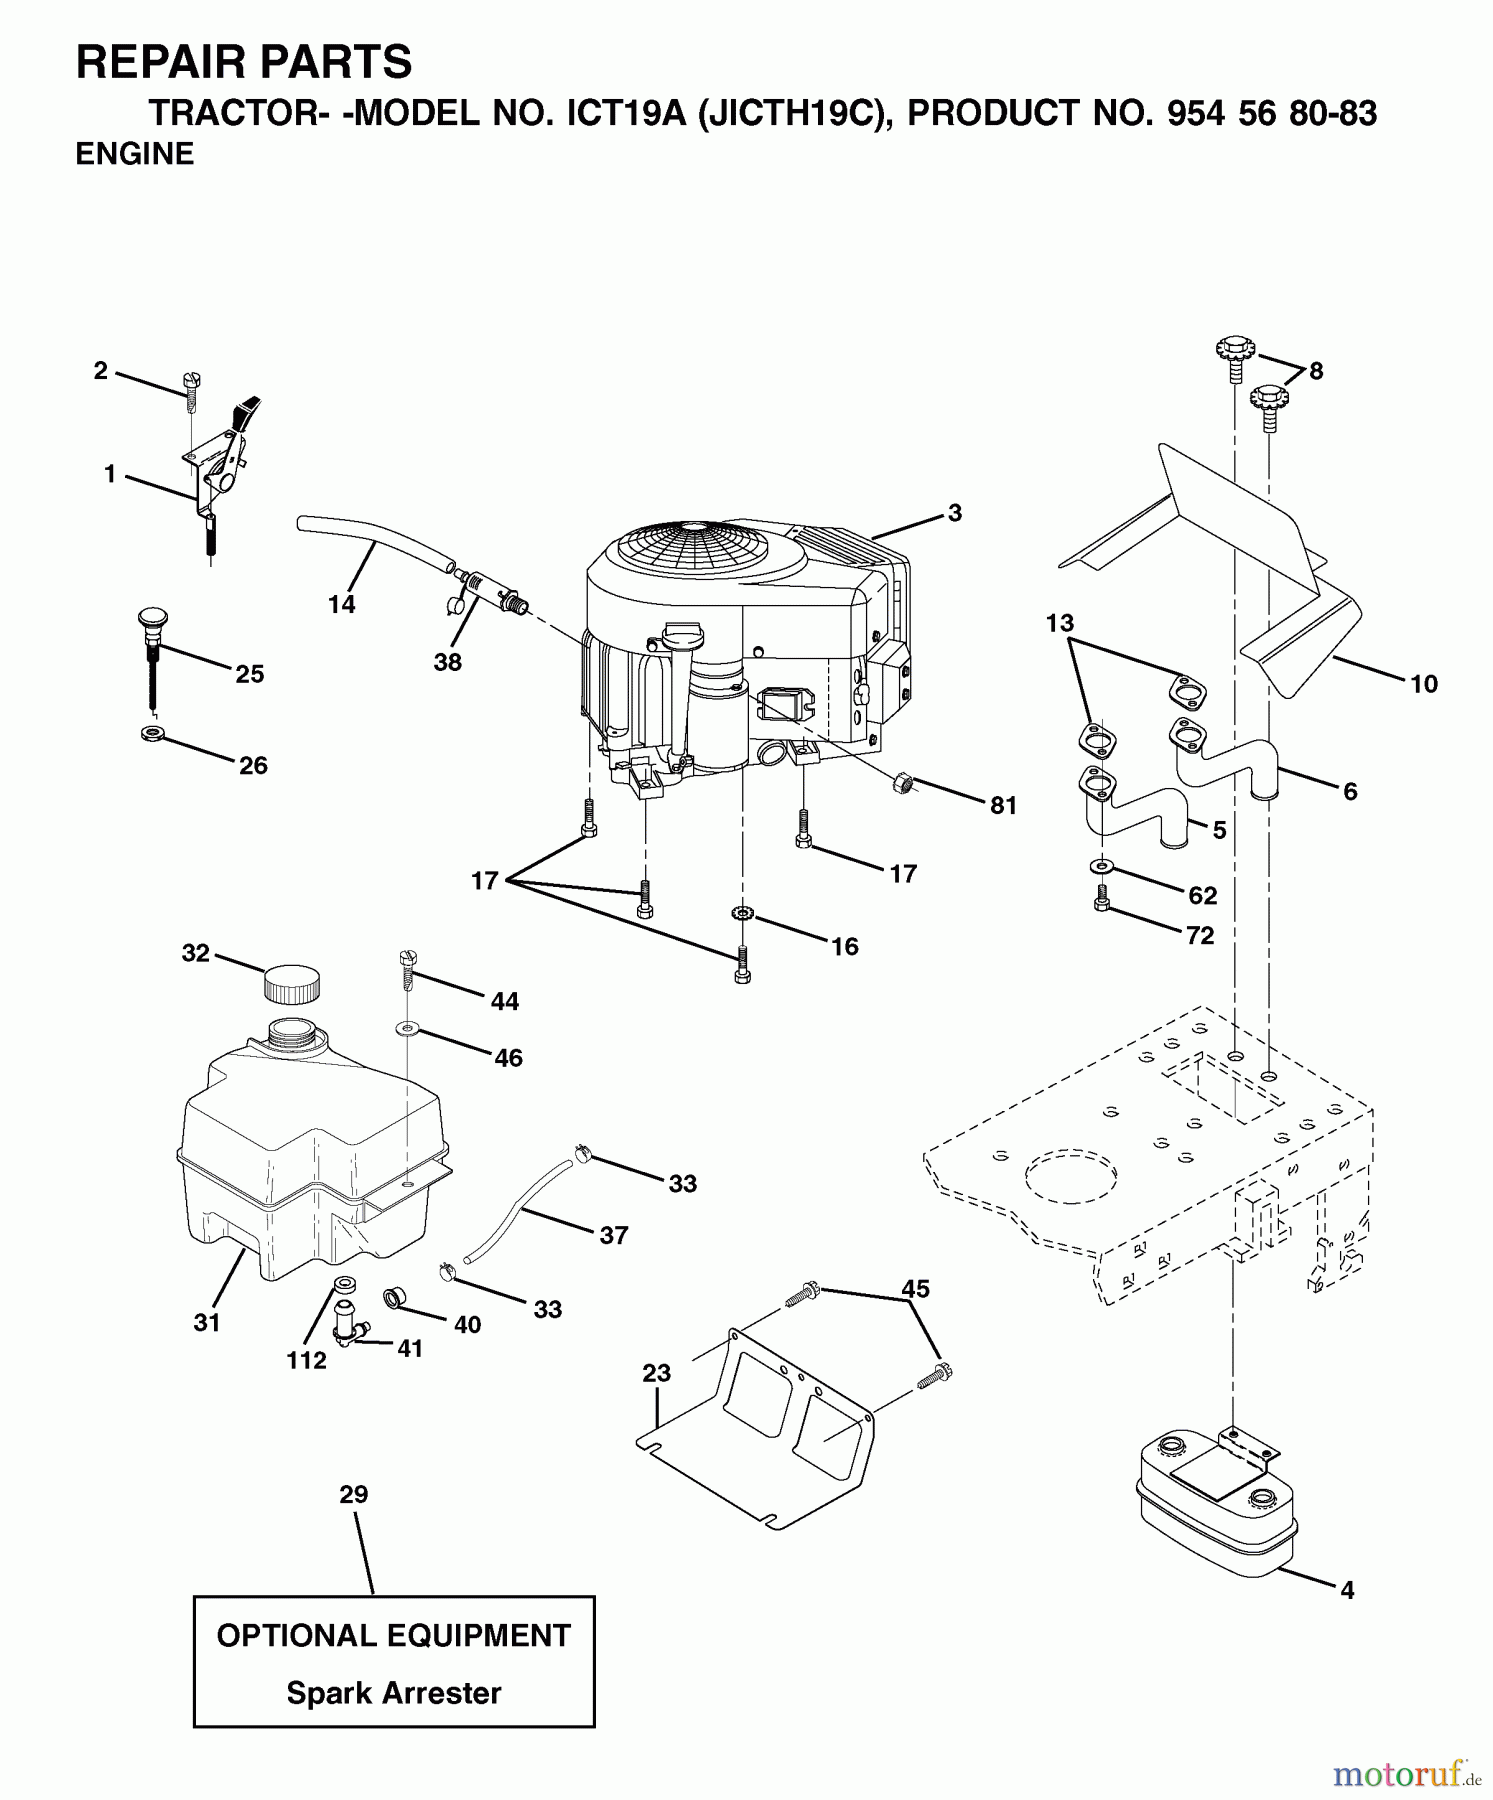  Jonsered Rasen  und Garten Traktoren ICT19A (JICTH19C, 954568083) - Jonsered Lawn & Garden Tractor (2002-06) ENGINE